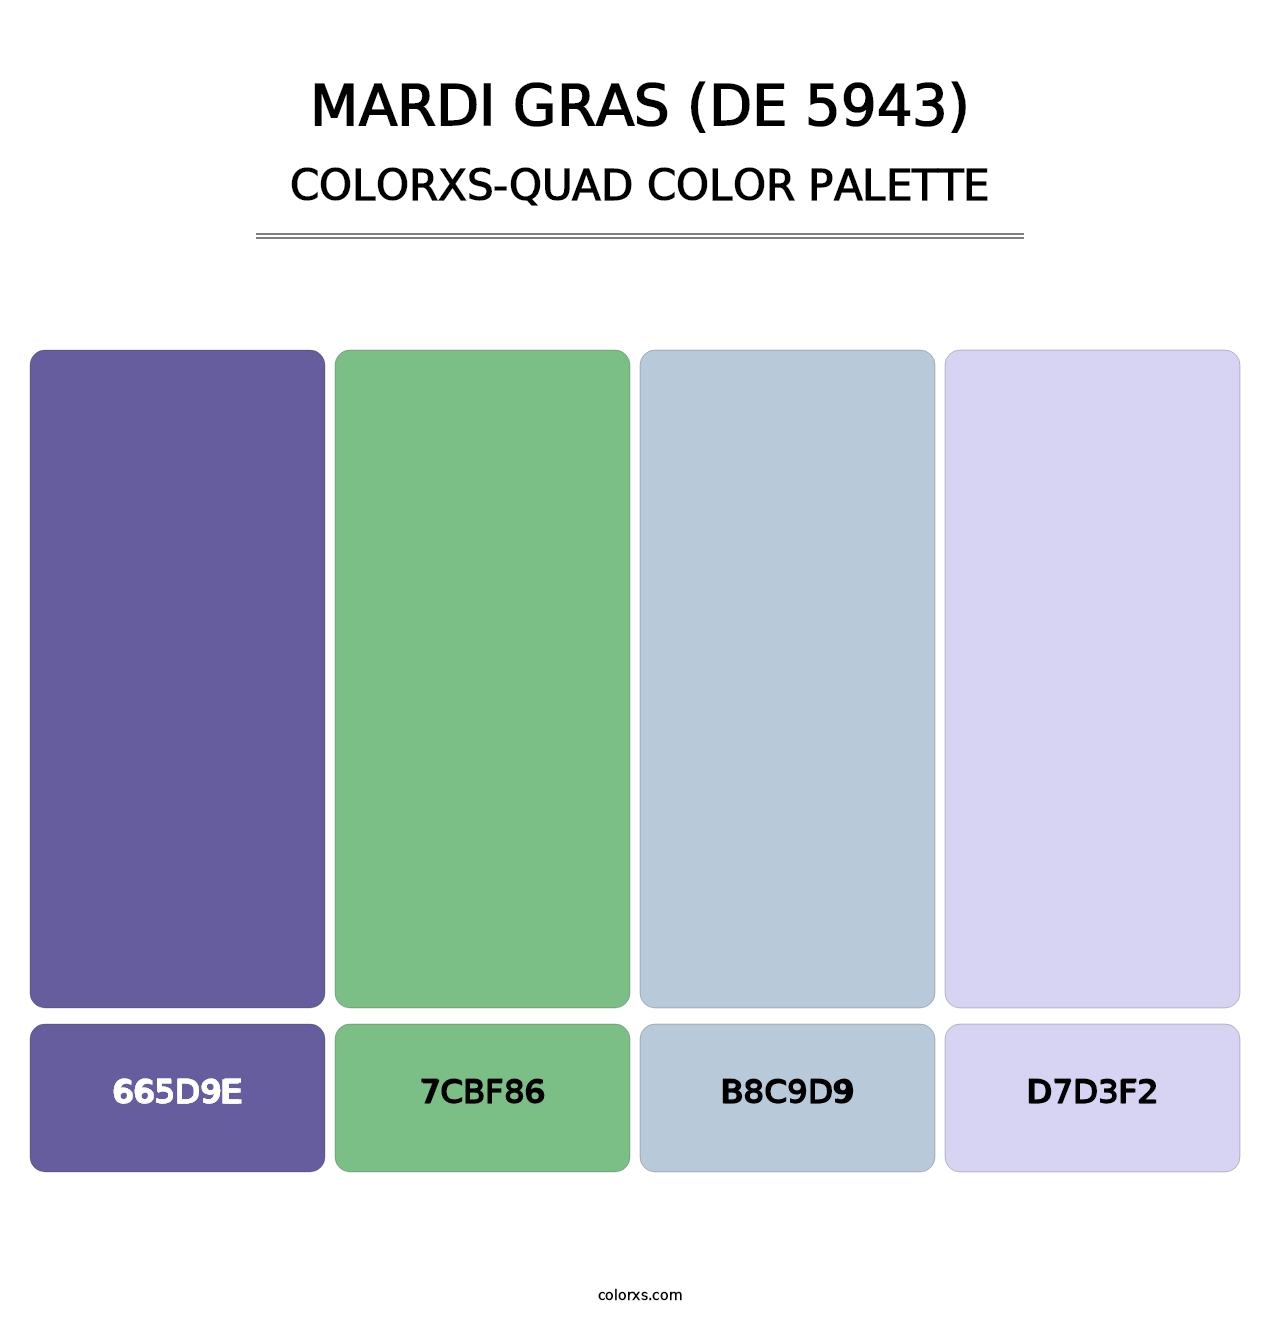 Mardi Gras (DE 5943) - Colorxs Quad Palette